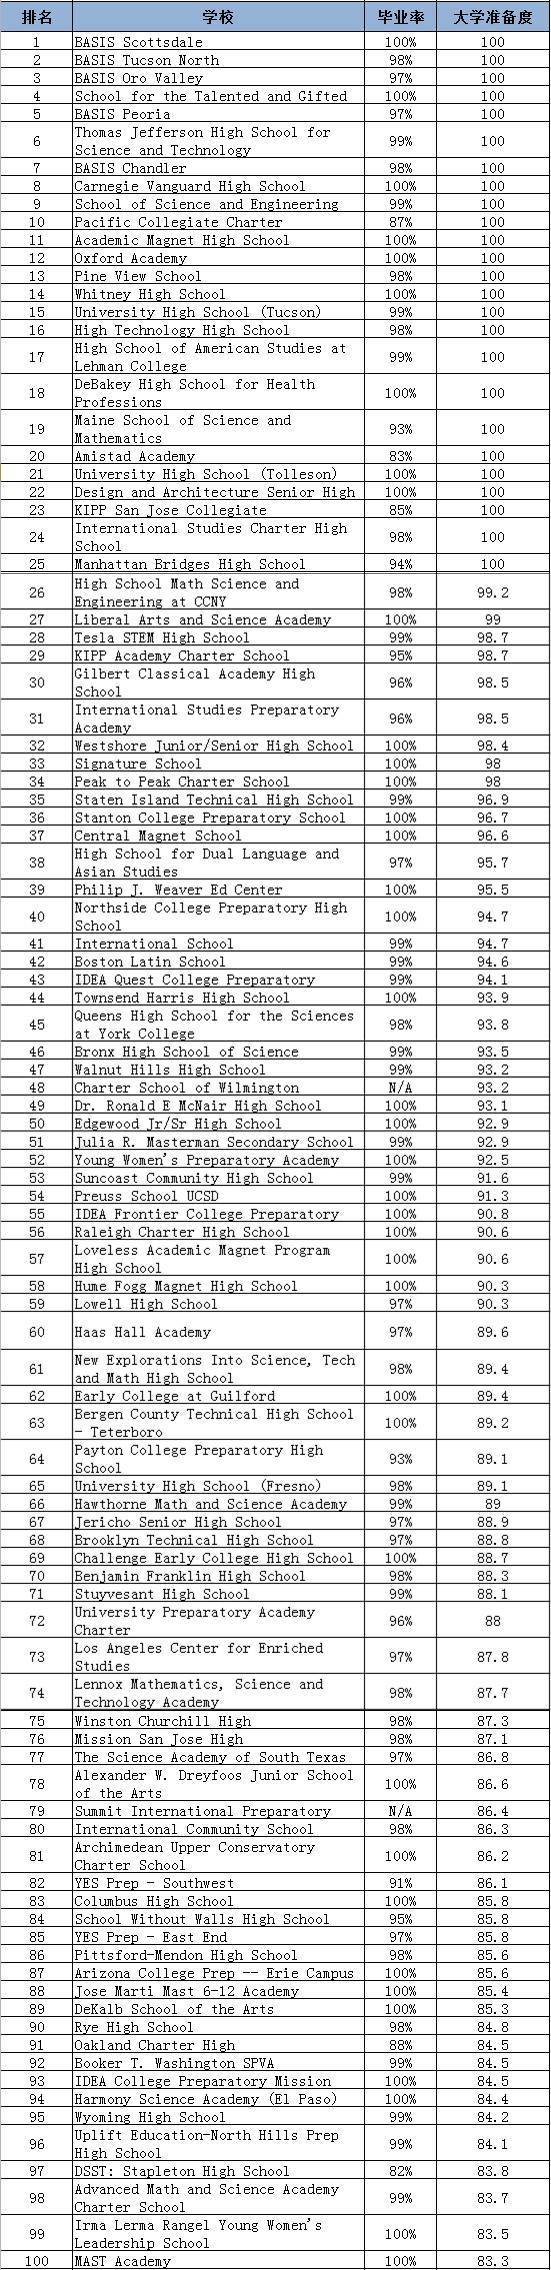 2017USNEWS全美最佳高中TOP100！能否考上美国名校就看你了！